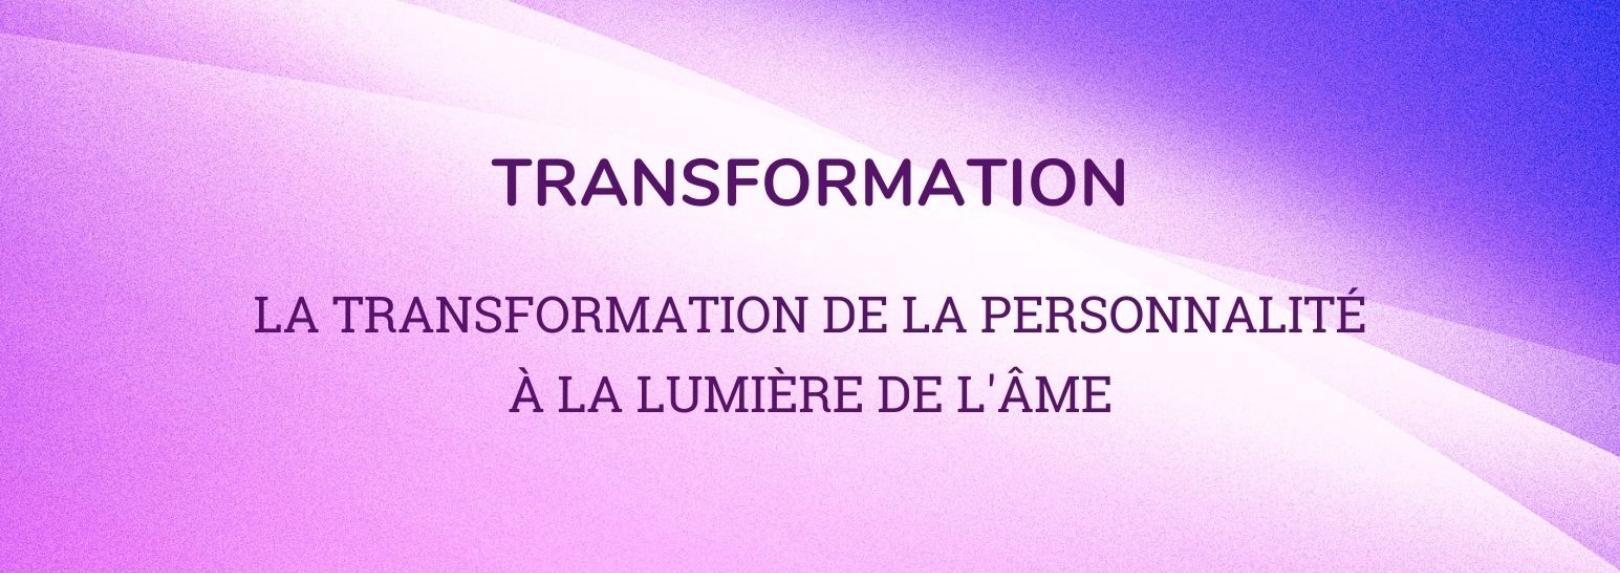 Transformation: Transformation/Transformation